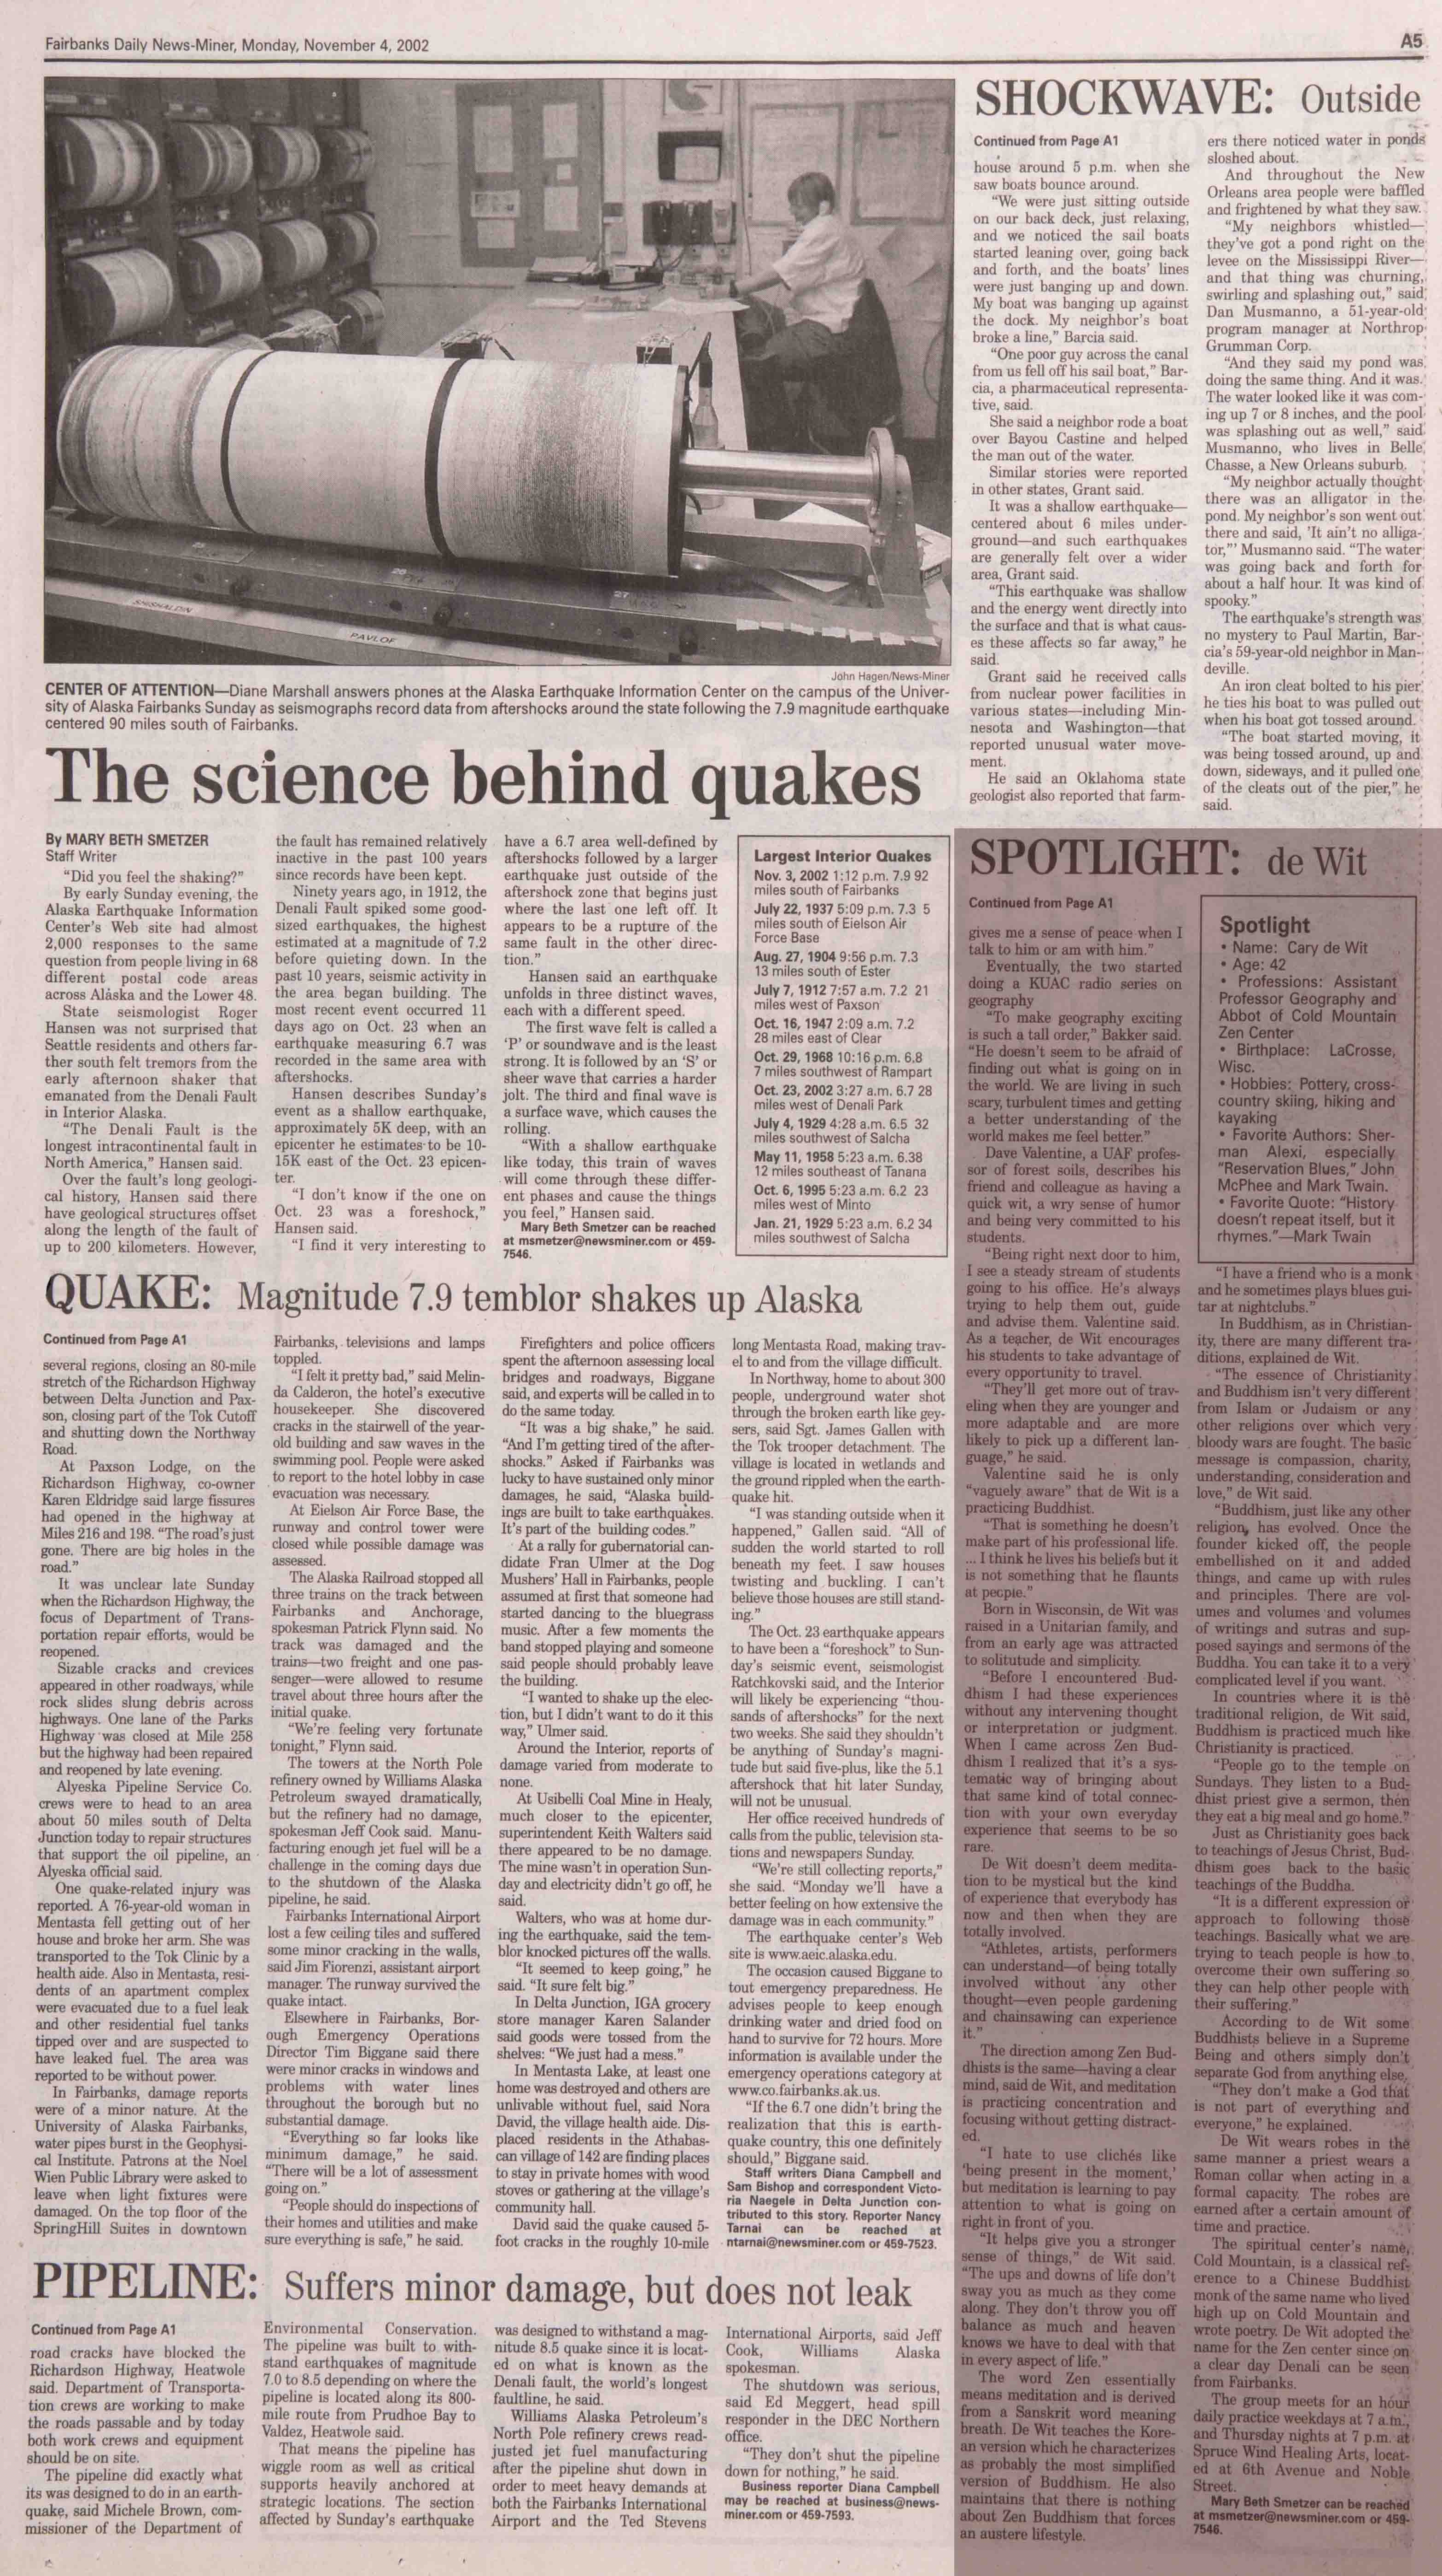 2002 November 4, Fairbanks Daily News-Miner (pg 5)